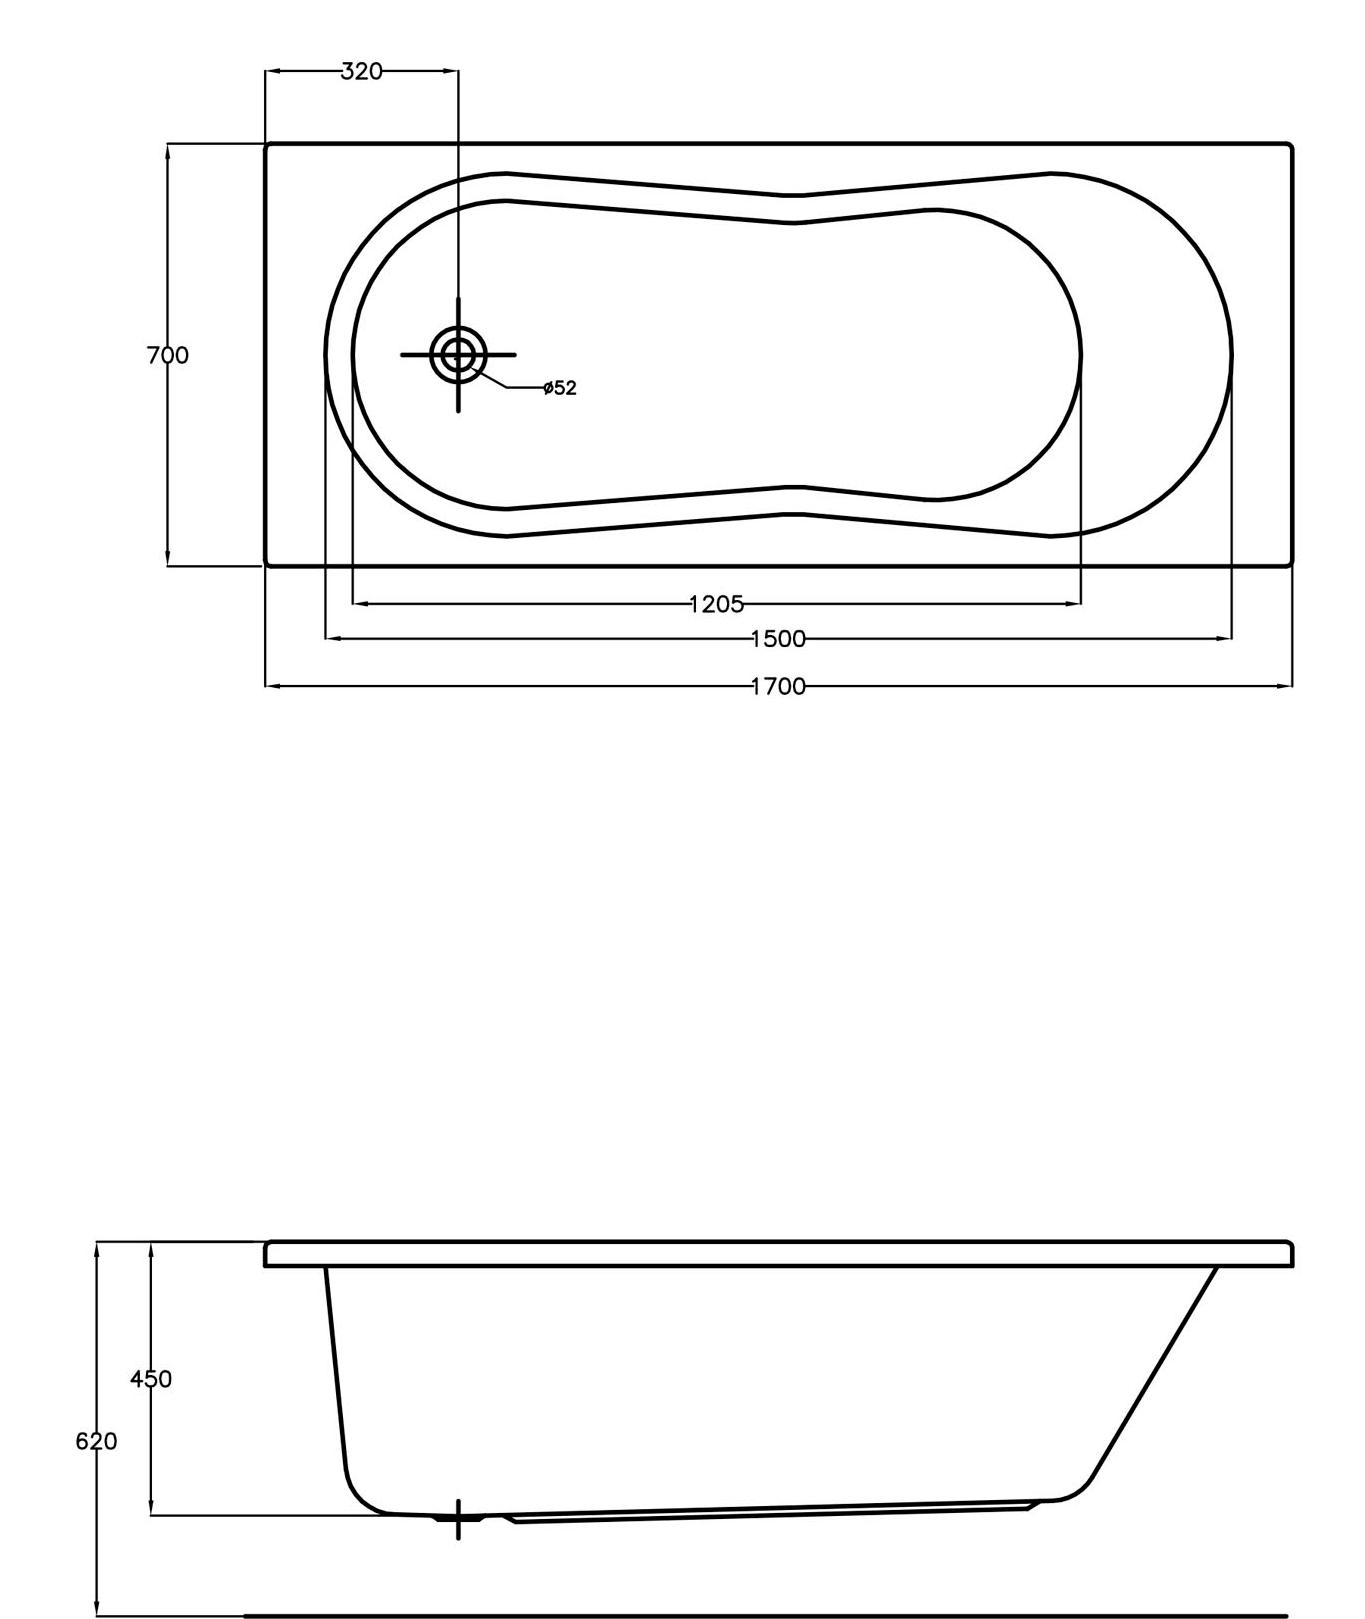 Акриловая ванна Cersanit Nike 170x70 фото